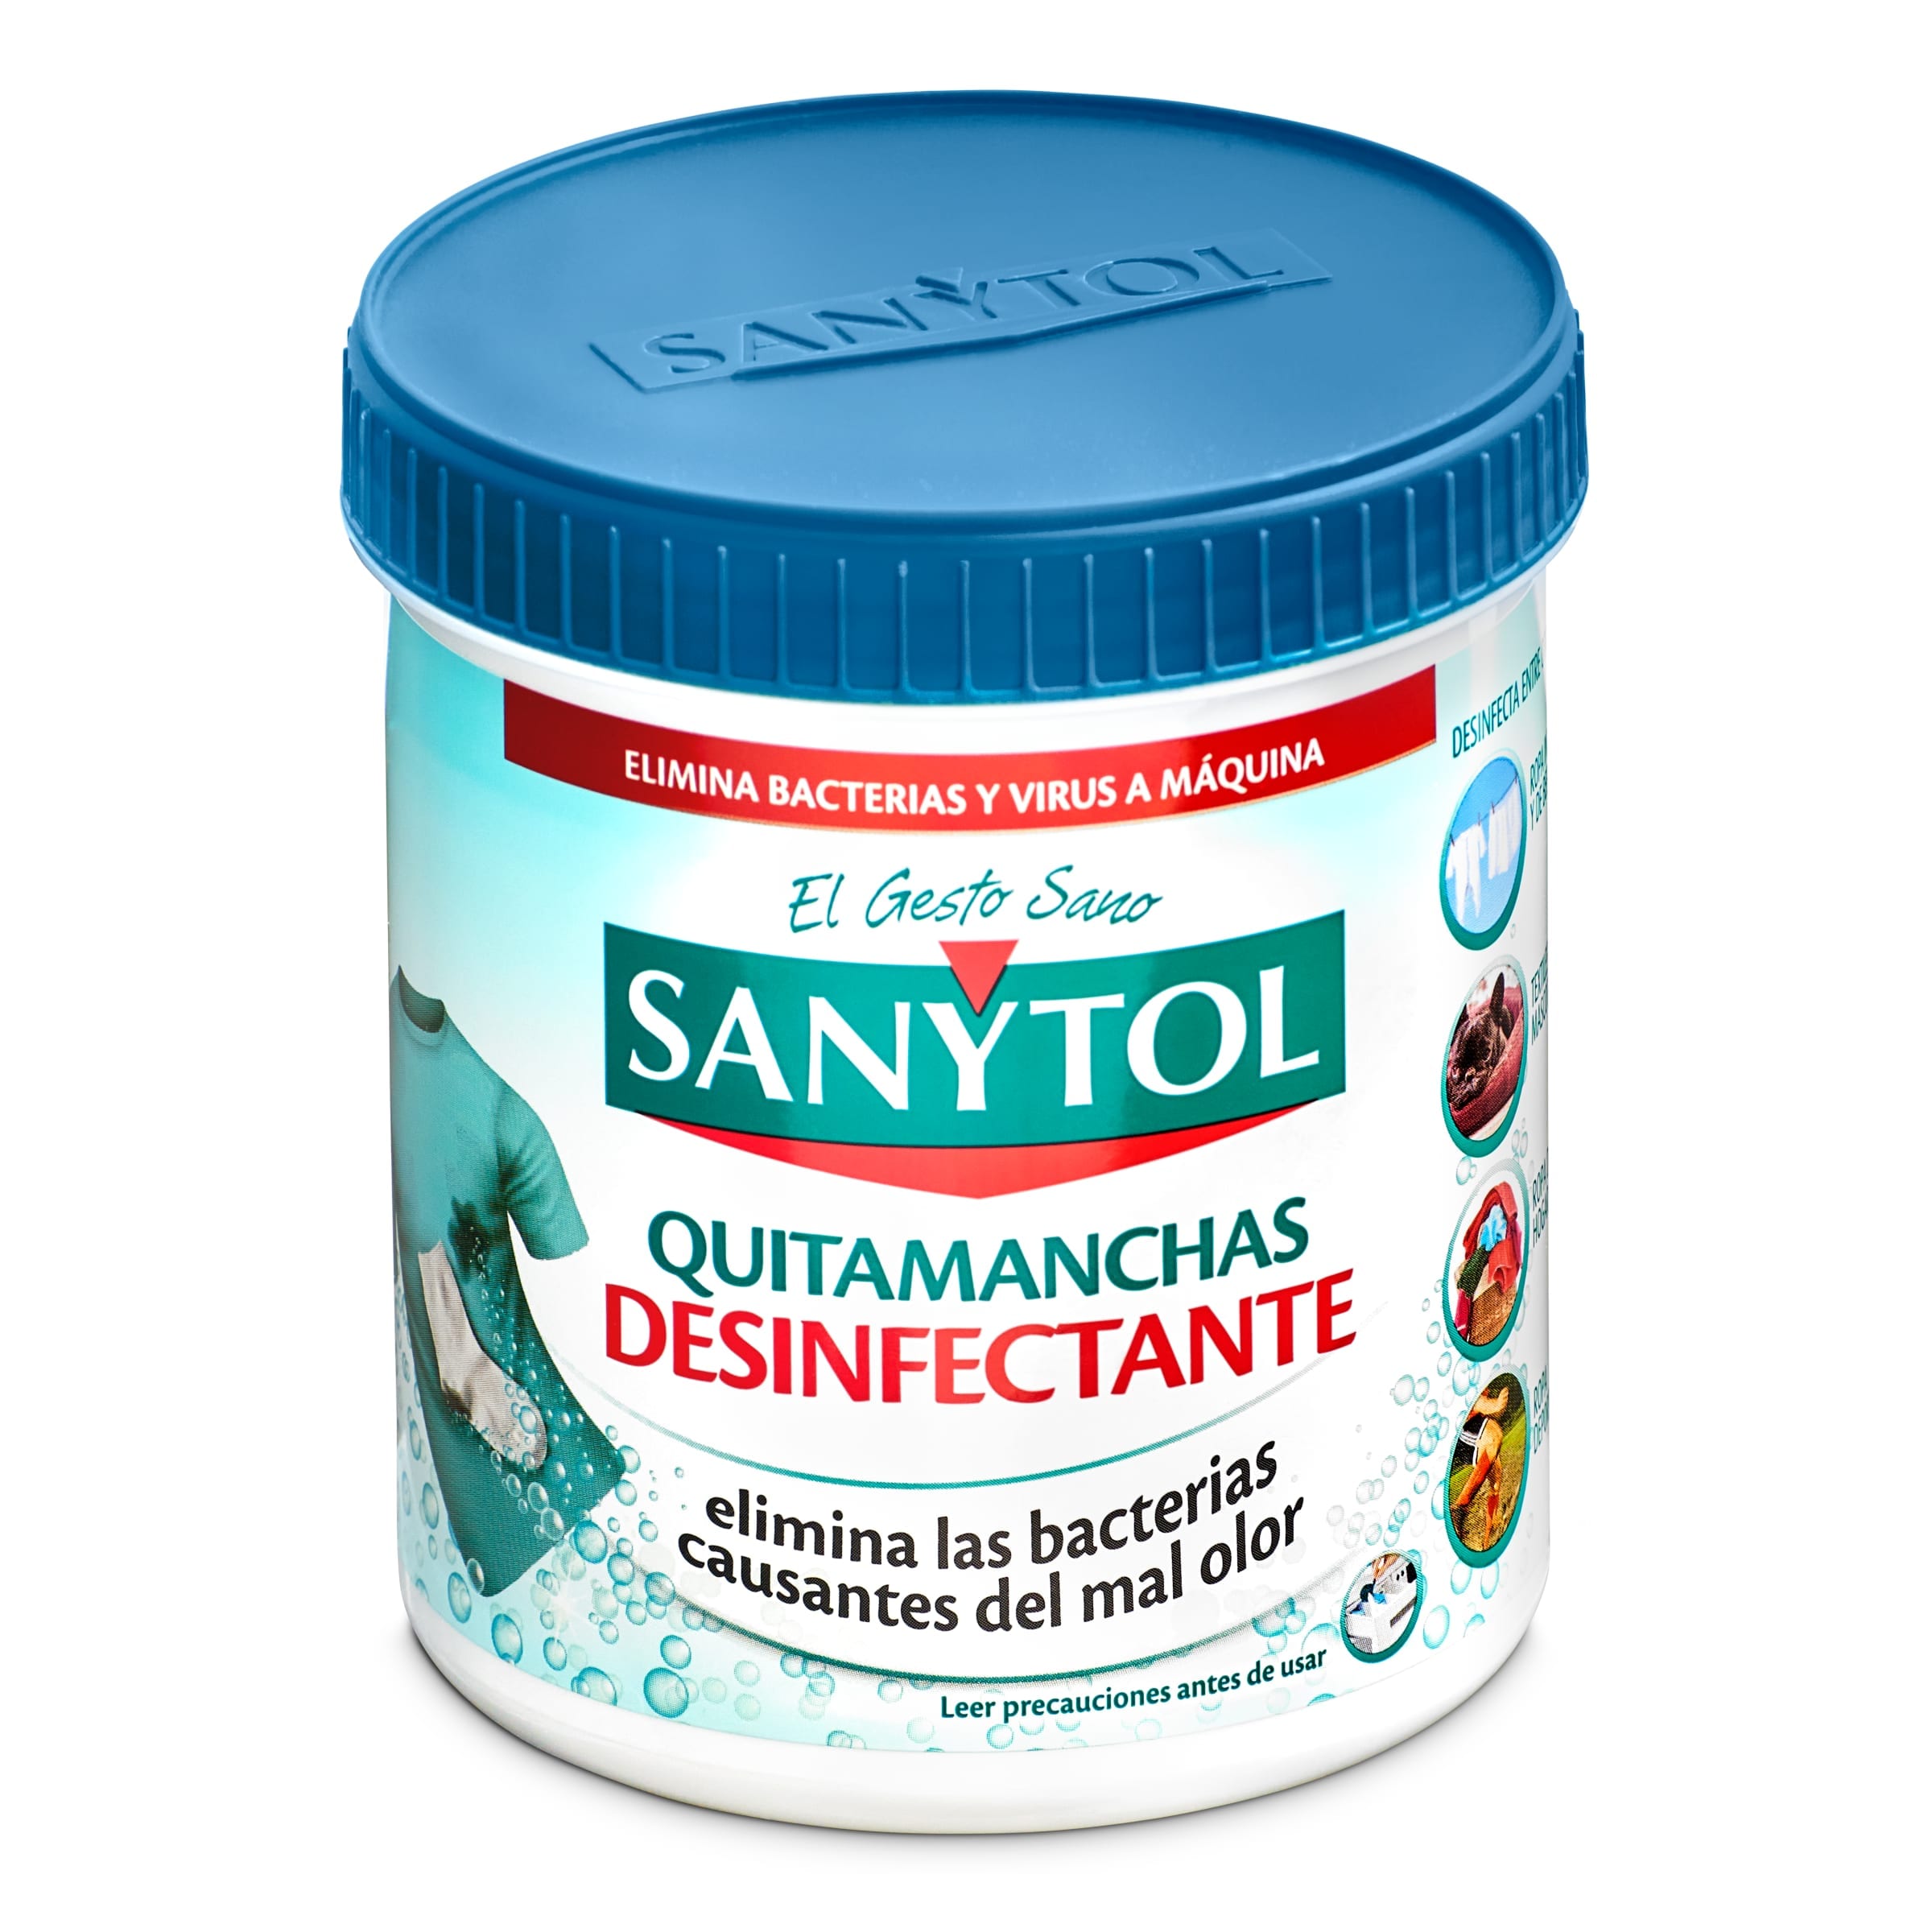 Quitamanchas desinfectante Sanytol bote 450 g - Supermercados DIA